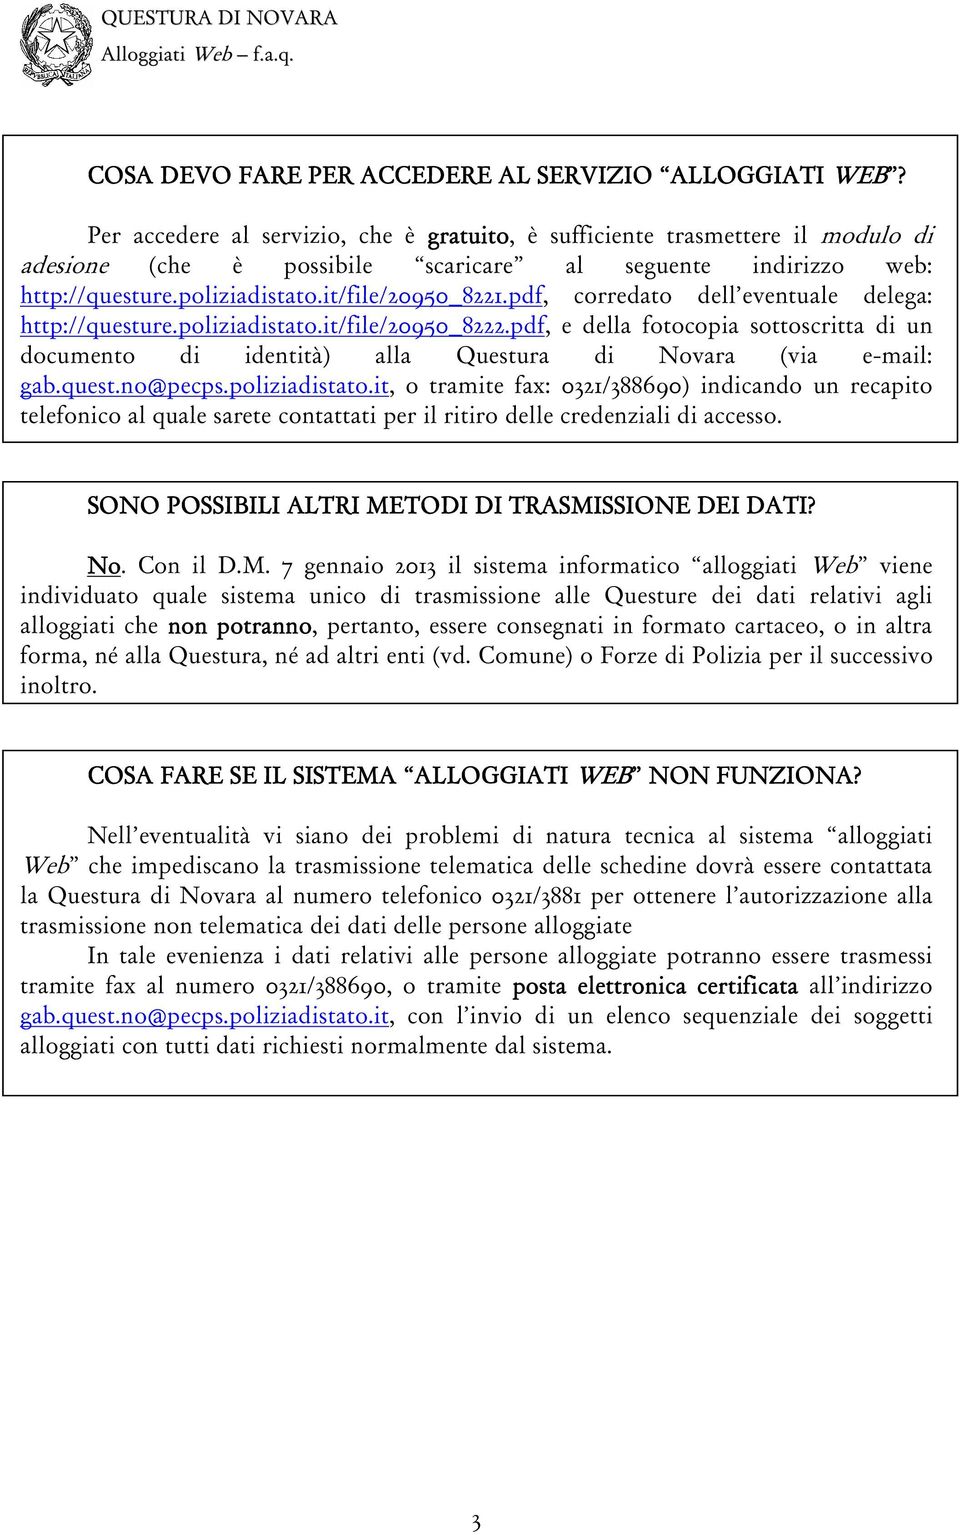 pdf, corredato dell eventuale delega: http://questure.poliziadistato.it/file/20950_8222.pdf, e della fotocopia sottoscritta di un documento di identità) alla Questura di Novara (via e-mail: gab.quest.no@pecps.